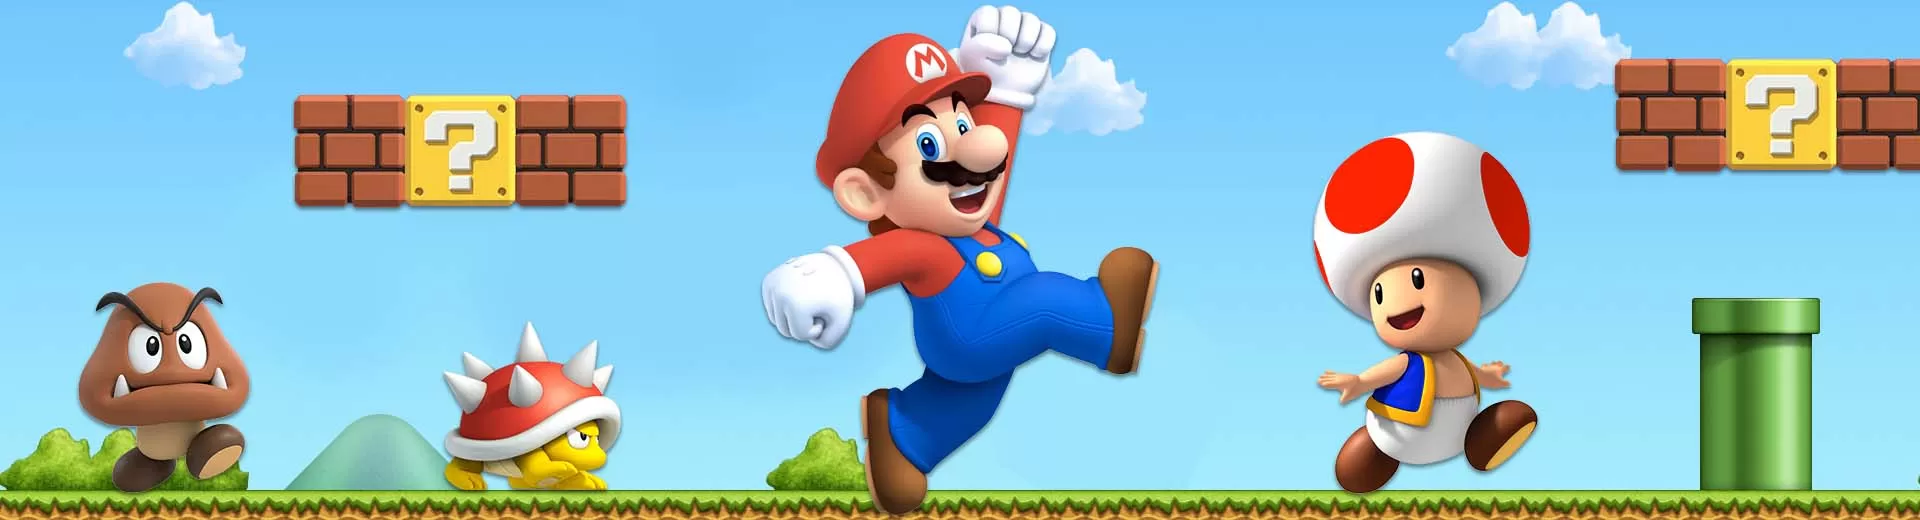 Super Mario Run Emulator Pc